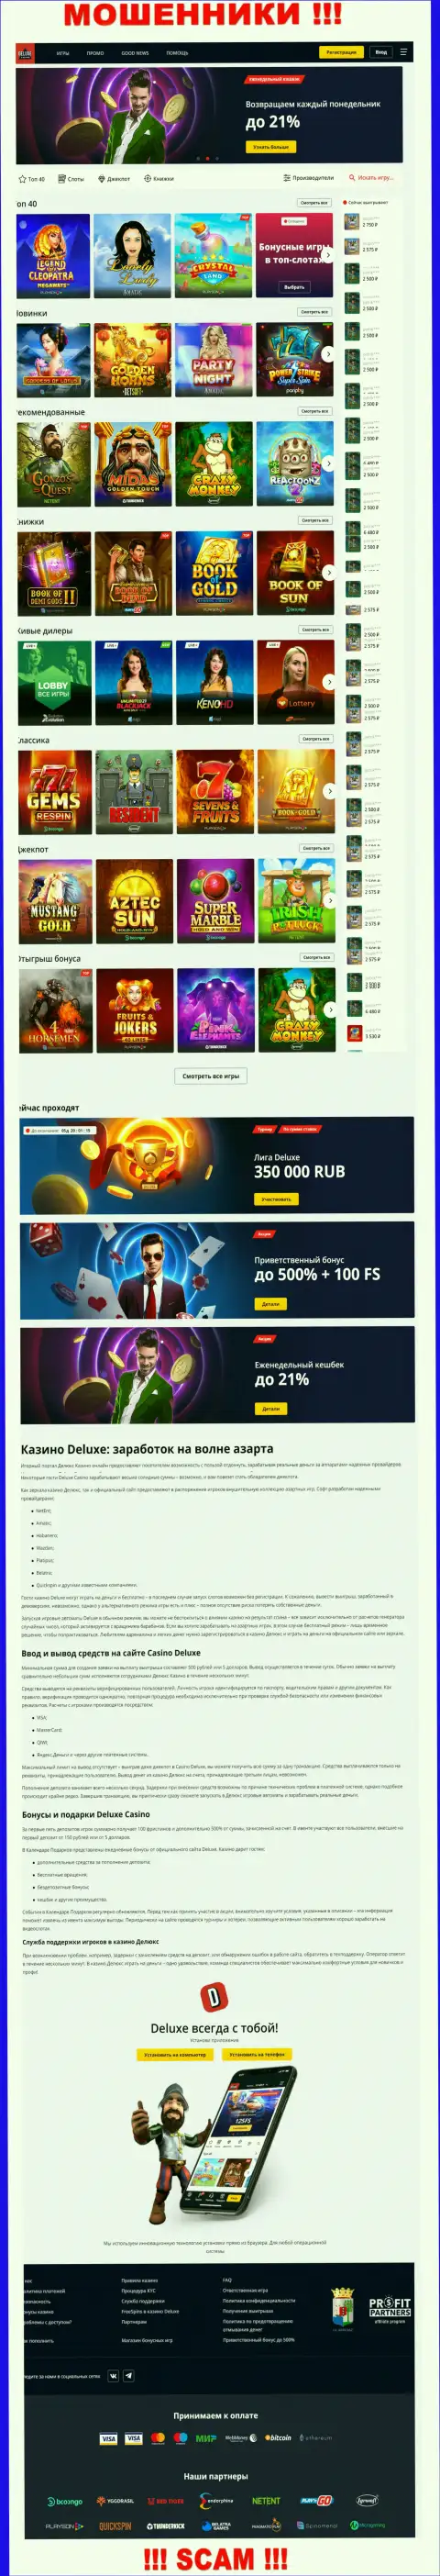 Официальная страница организации Deluxe-Casino Com